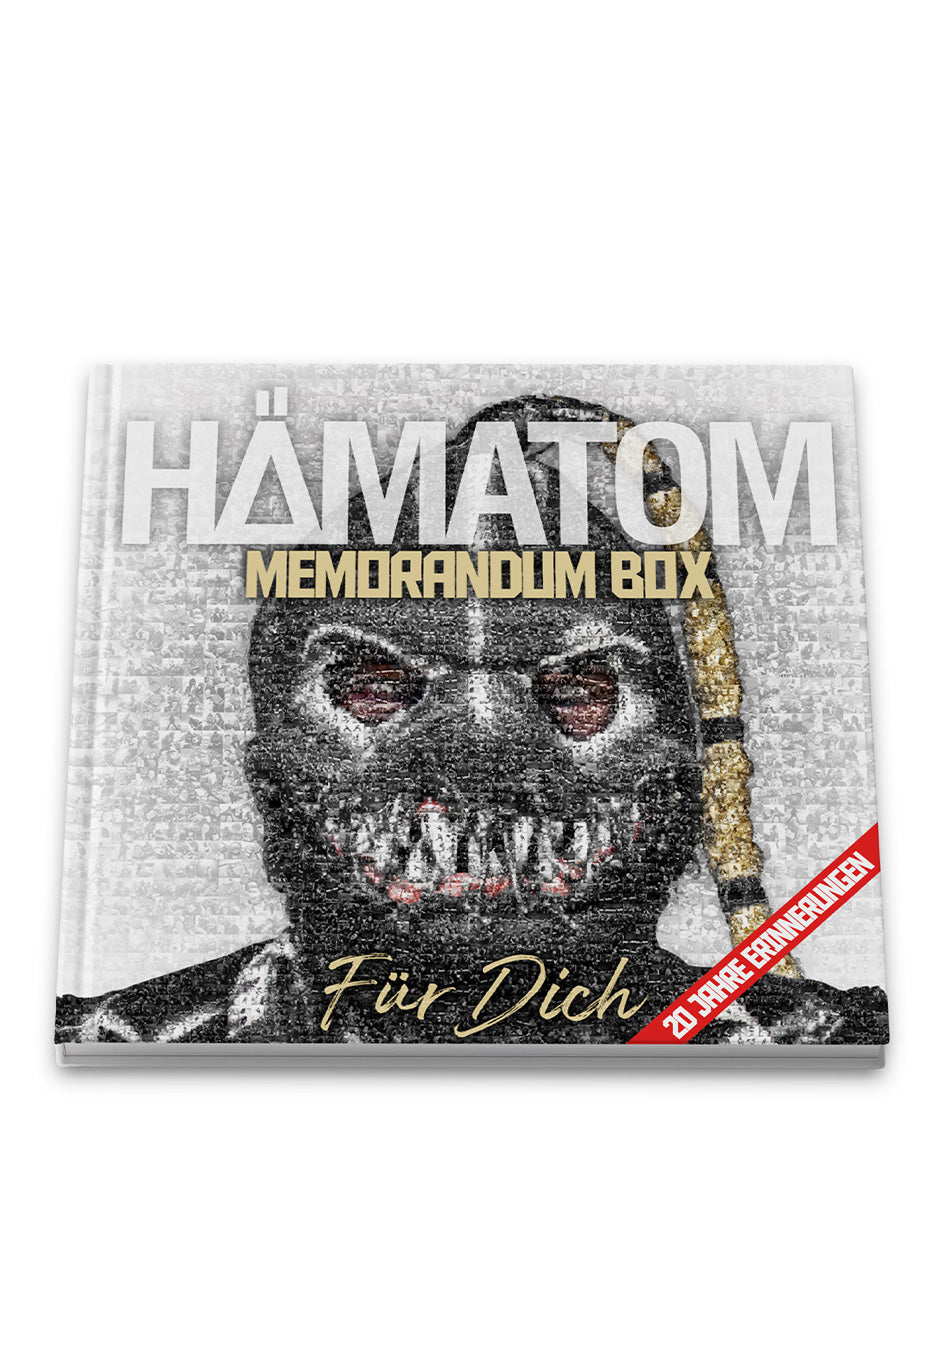 Hämatom - Für Dich  Ltd. Deluxe - CD Box Set